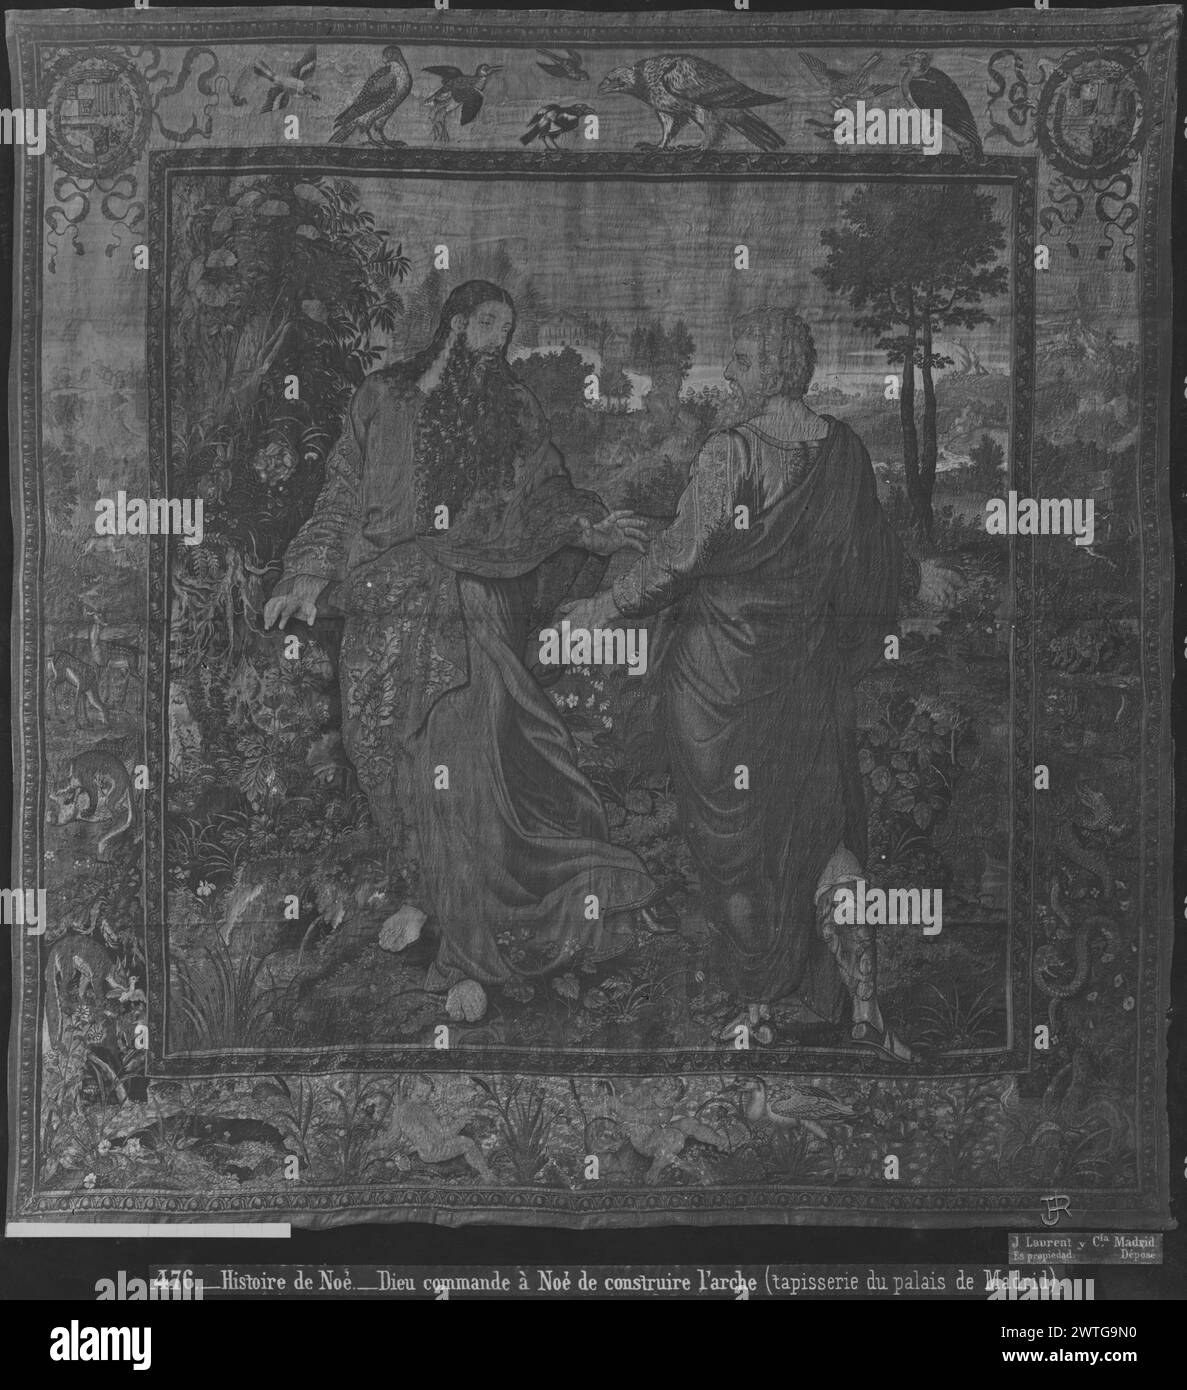 Dieu ordonne à Noé de construire l'arche. Coxie, Michiel (L'ancien) (pays-Bas (avant 1600) - Flandre, 1499-1592) (dessiné après) [peintre] Pannemaker, Wilhelm de (pays-Bas (avant 1600) - Flandre, acte. 1535-1578) (atelier, attr.) [tisserand] c. 1563-1566 tapisserie dimensions : H 433 x l 660 cm tapisserie matériaux/techniques : laine et soie ; fil métallique (or) ; fil métallique (argent) culture : Centre de tissage flamand : Bruxelles historique de propriété : inventaire de Carlos II (1701-1703). Inventaire de Carlos III (1788). Inventaire de Fernando VII (1834). Espagne, Madrid, Palacio Real de Madrid, accno. A. Banque D'Images